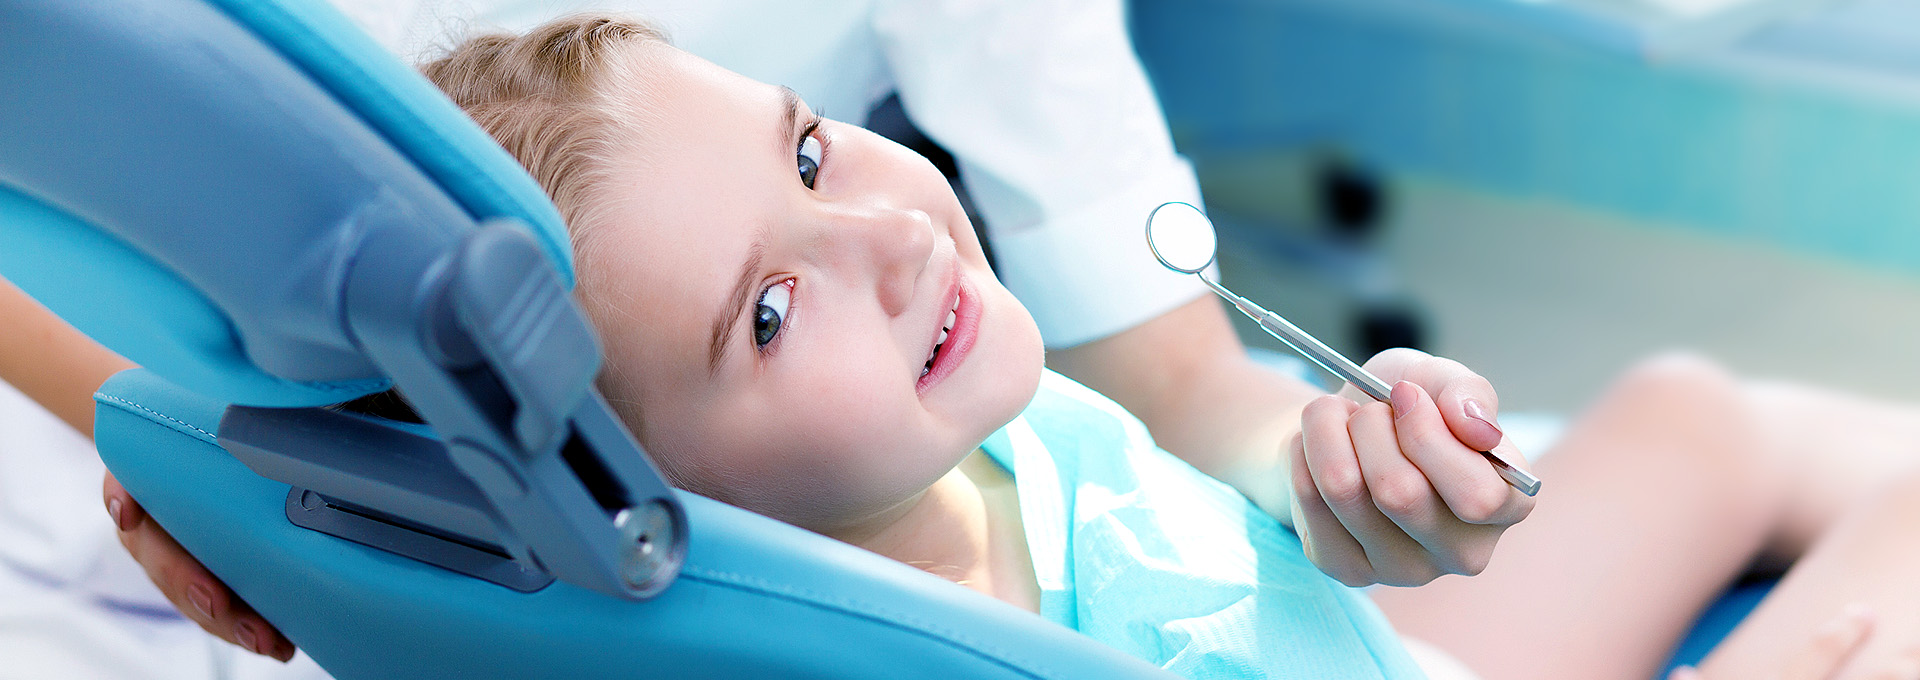 Pedodonzia: immagine di una visita odontoiatrica dentistica ad una bambina serena